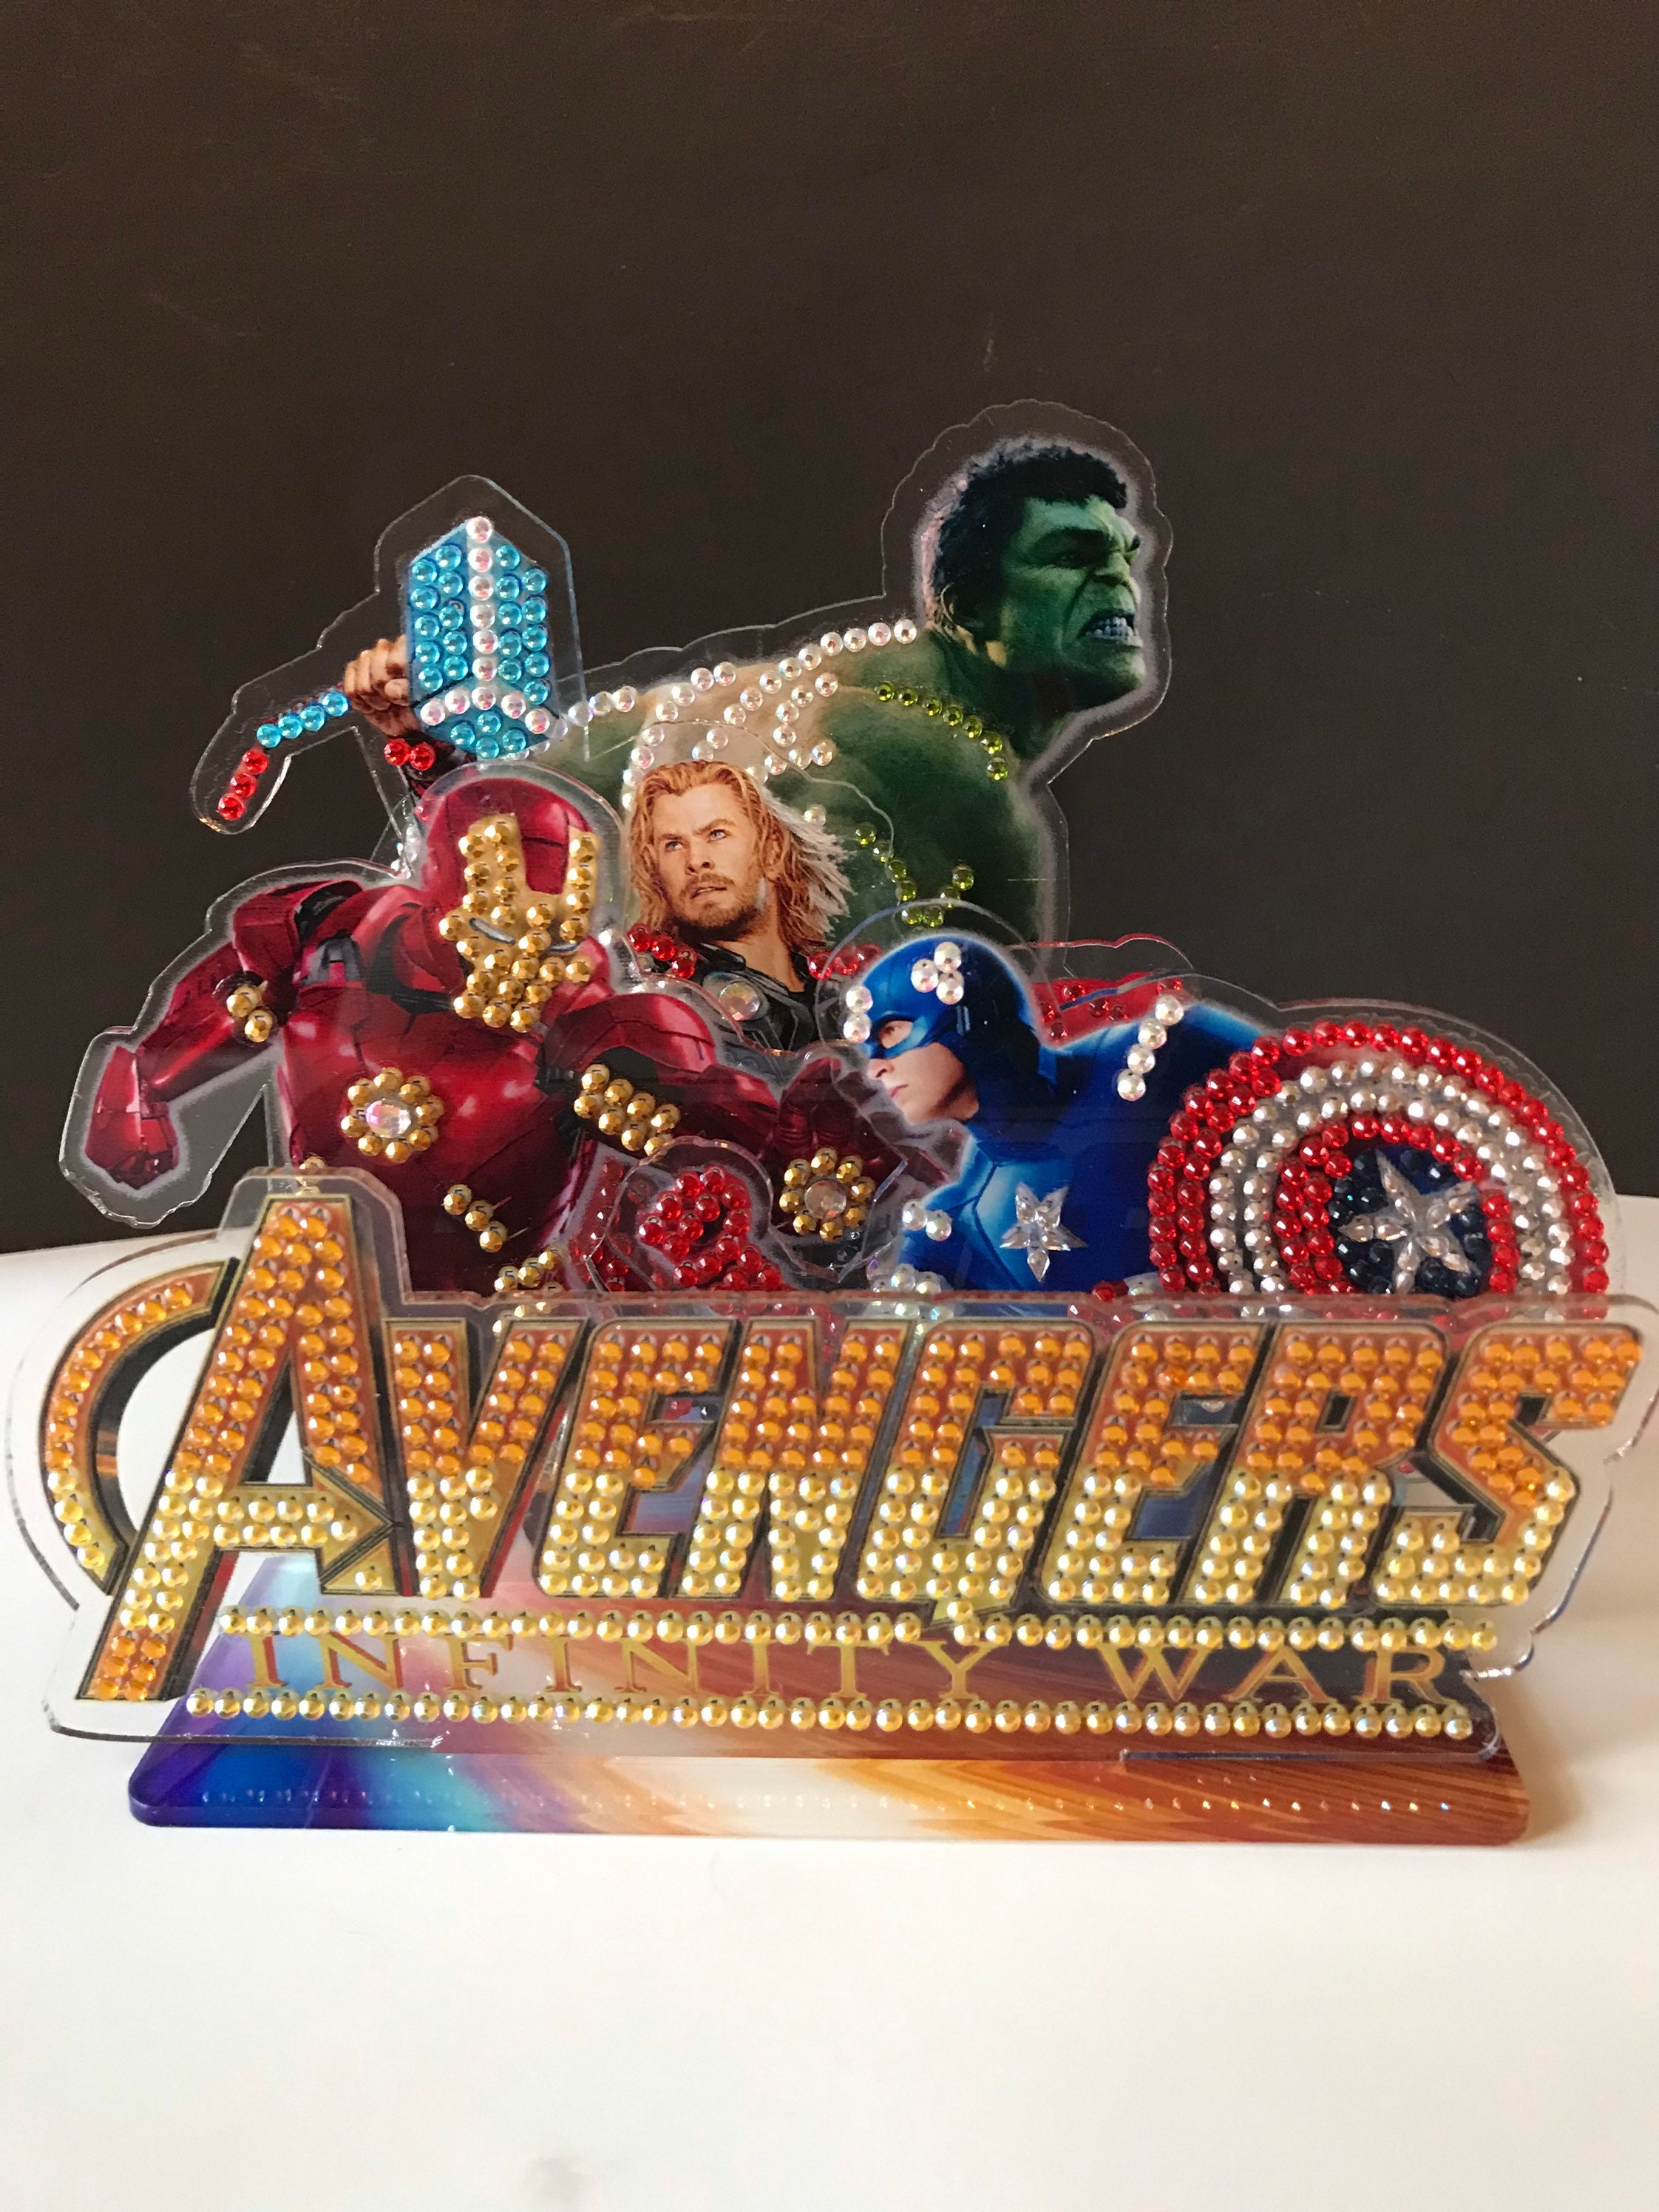 Captain Marvel 5D Diamond Painting Avengers Movie Poster New